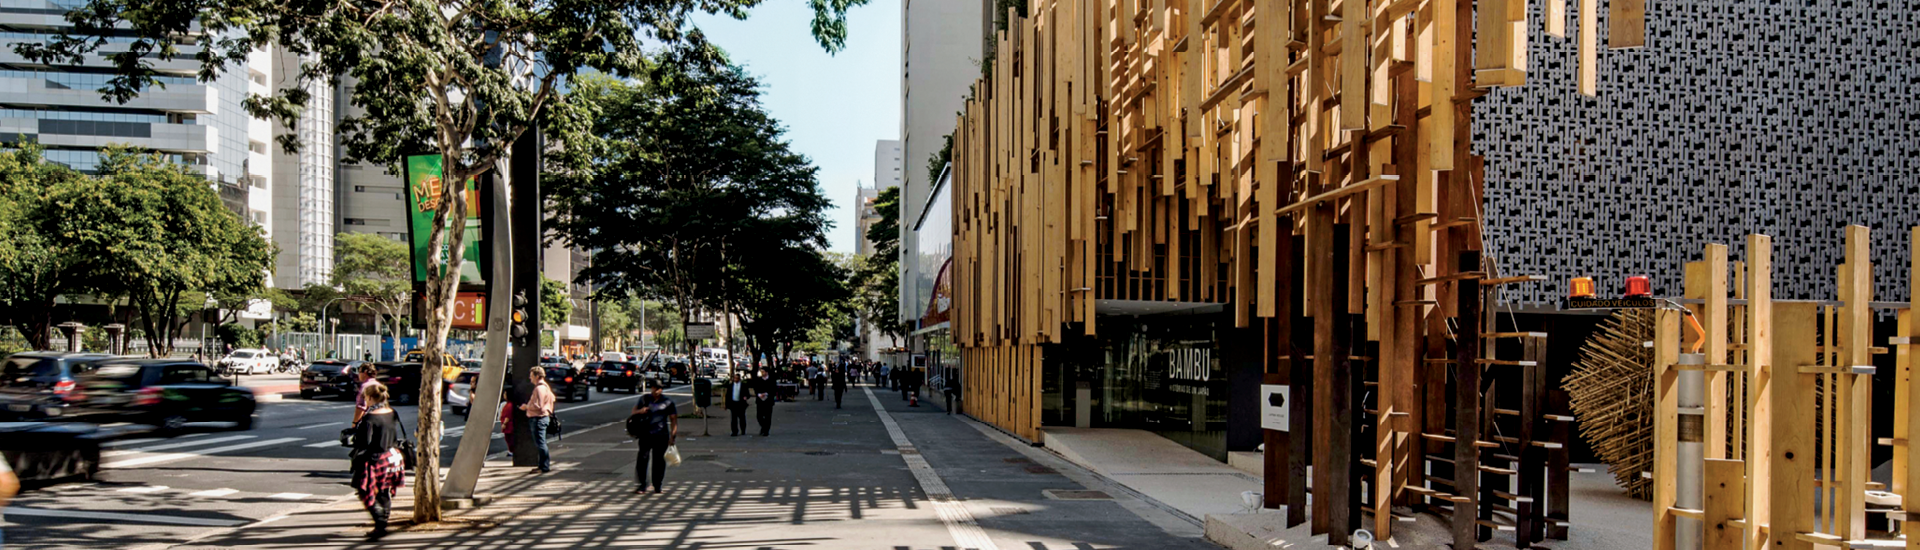 Fachada da Japan House São Paulo e calçada da Avenida Paulista